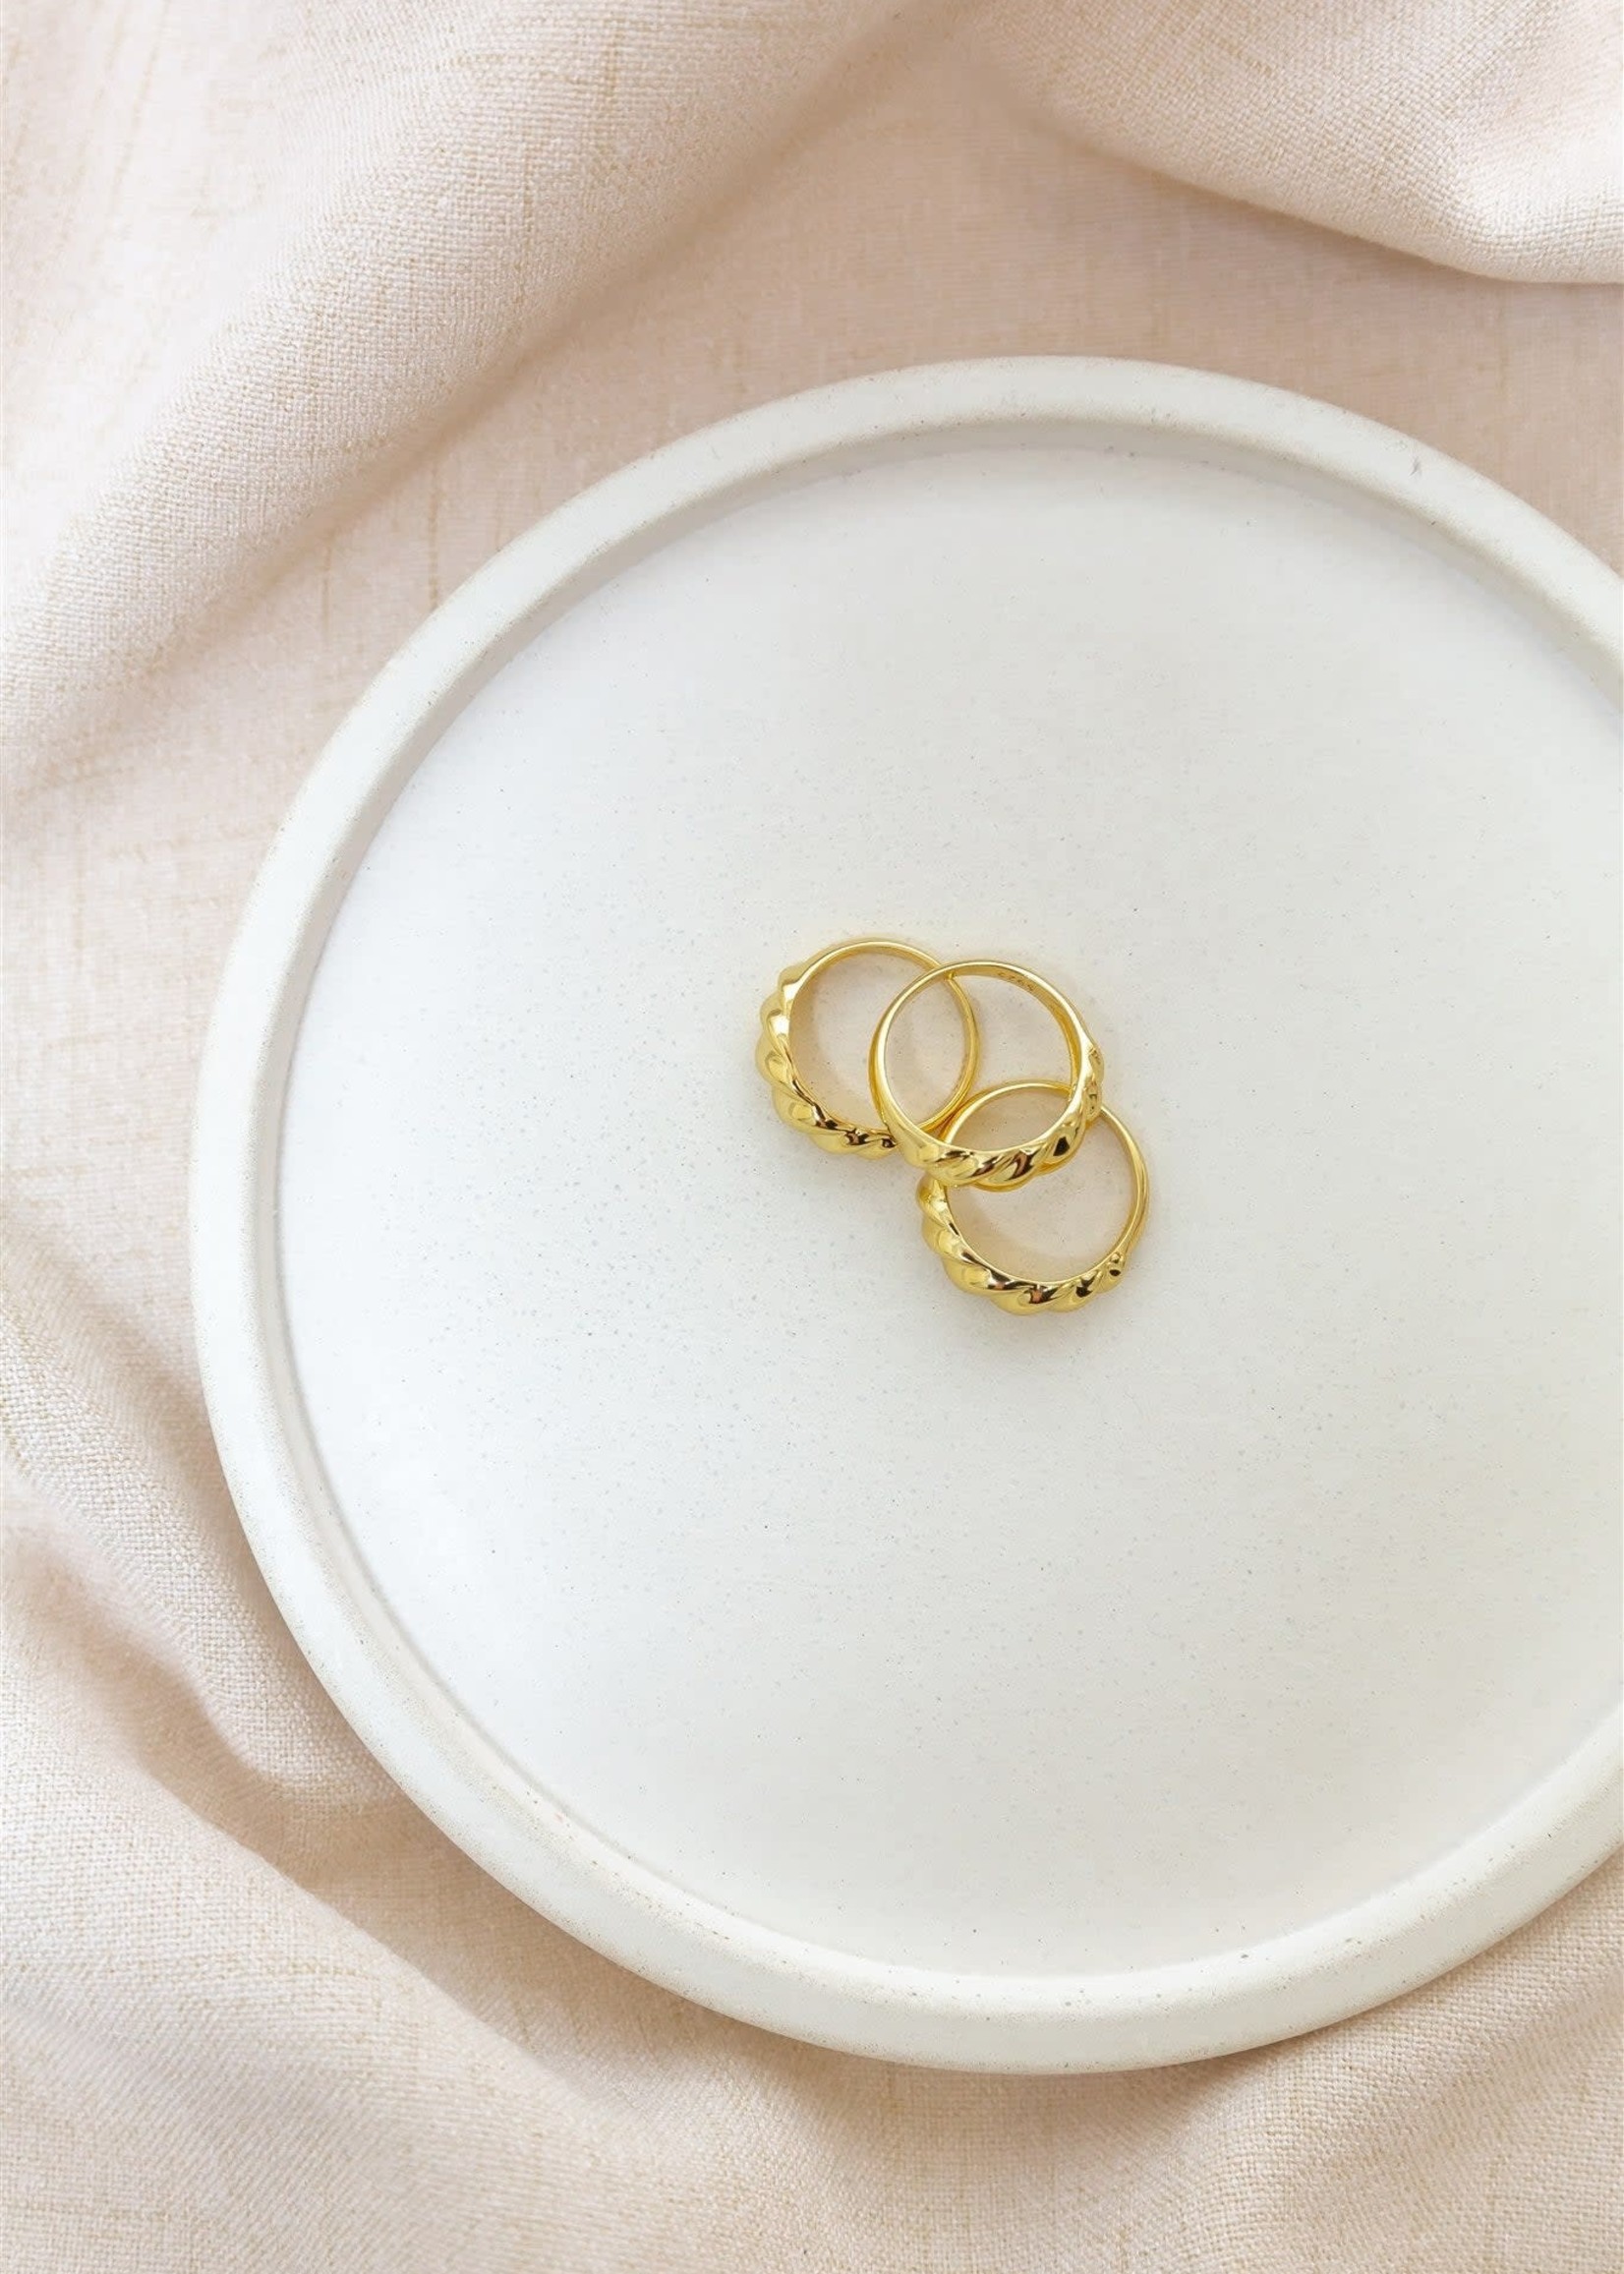 ELIZABETH. LYN Saige Ring, Gold Plated, Sz6